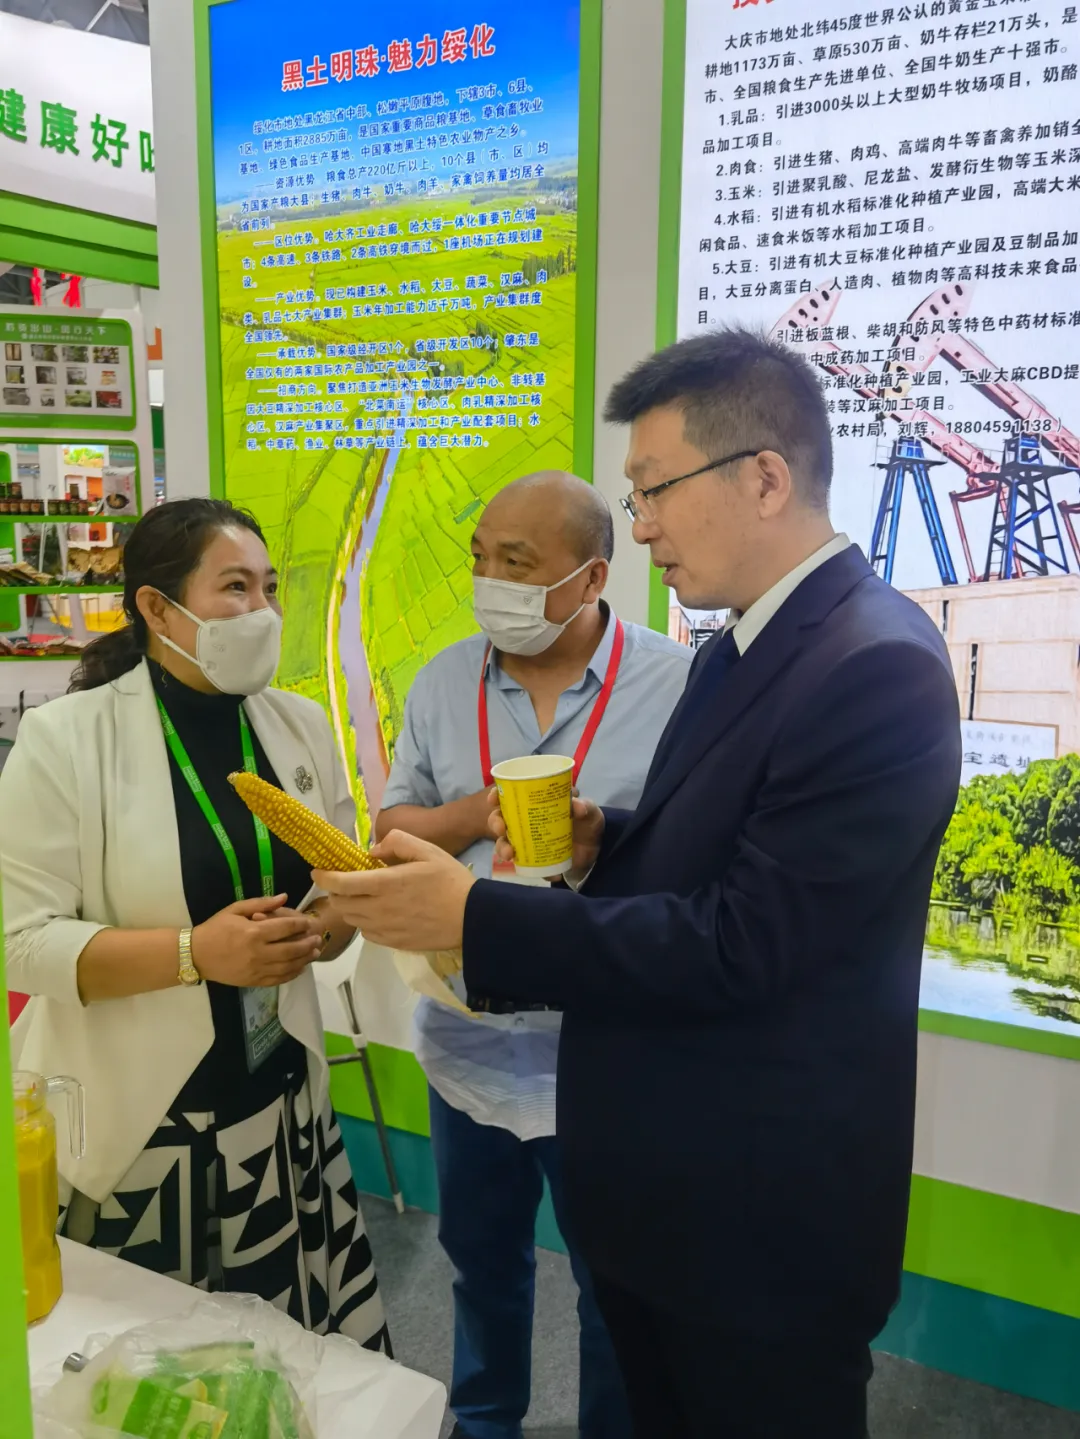 小园玉米荣获2021中国安徽名优农产品暨农业产业交易会金奖